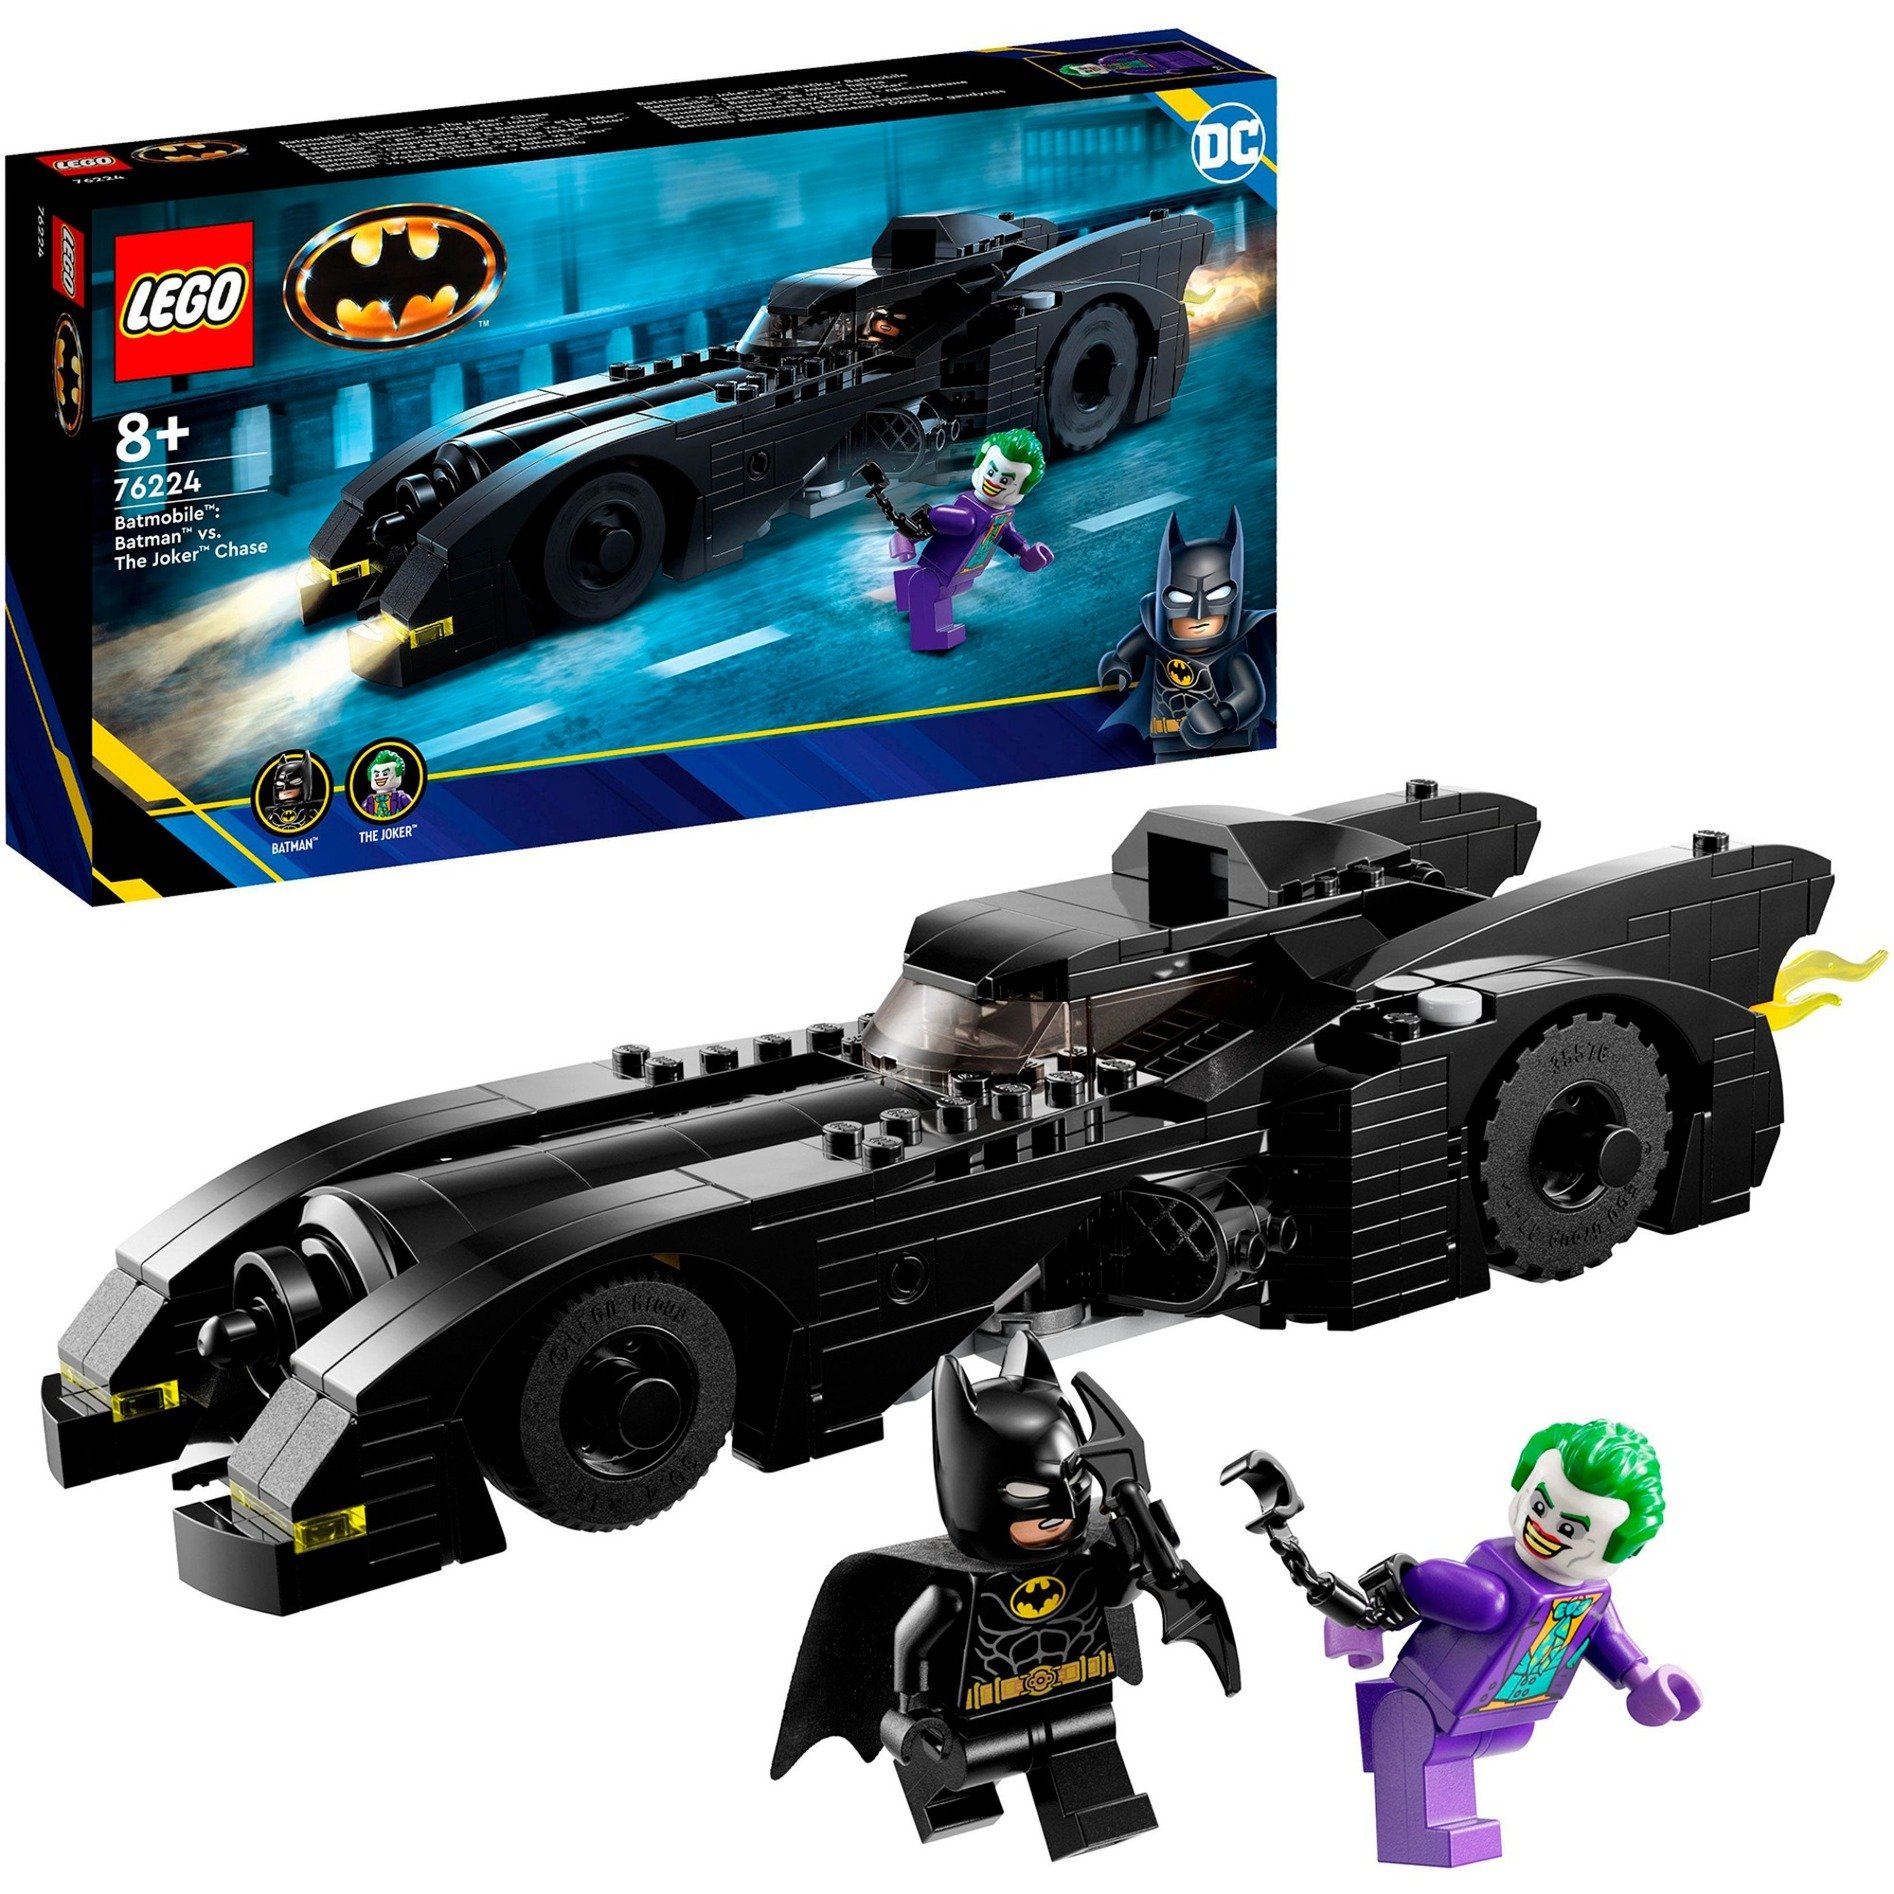 LEGO 76224 DC Batmobile: Batman verfolgt den Joker Set, Batmobil-Spielzeugauto von 1989 mit 2 Minifiguren, Automodell des Dark Knight mit Batarang, Superhelden-Geschenk für Kinder, Jungen und Mädchen